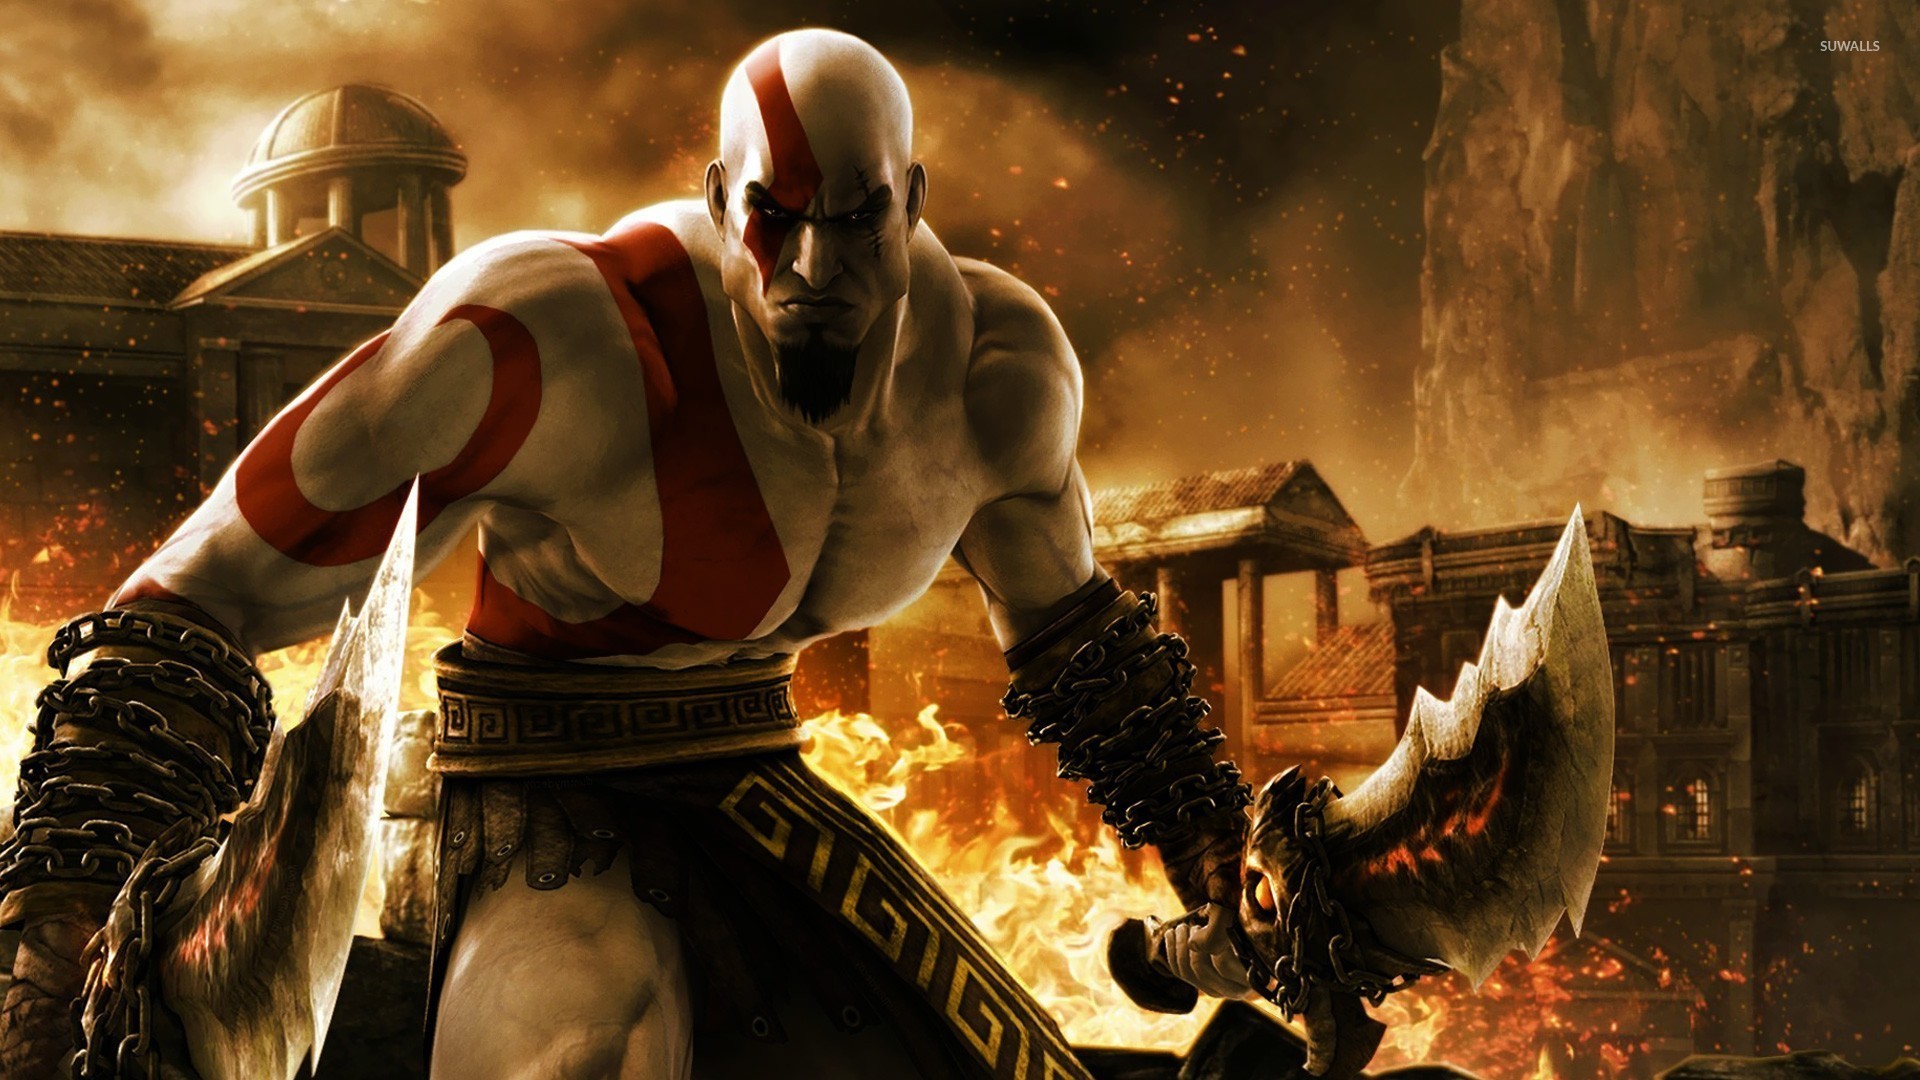 1920x1080 Kratos - God of War 3 wallpaper  jpg